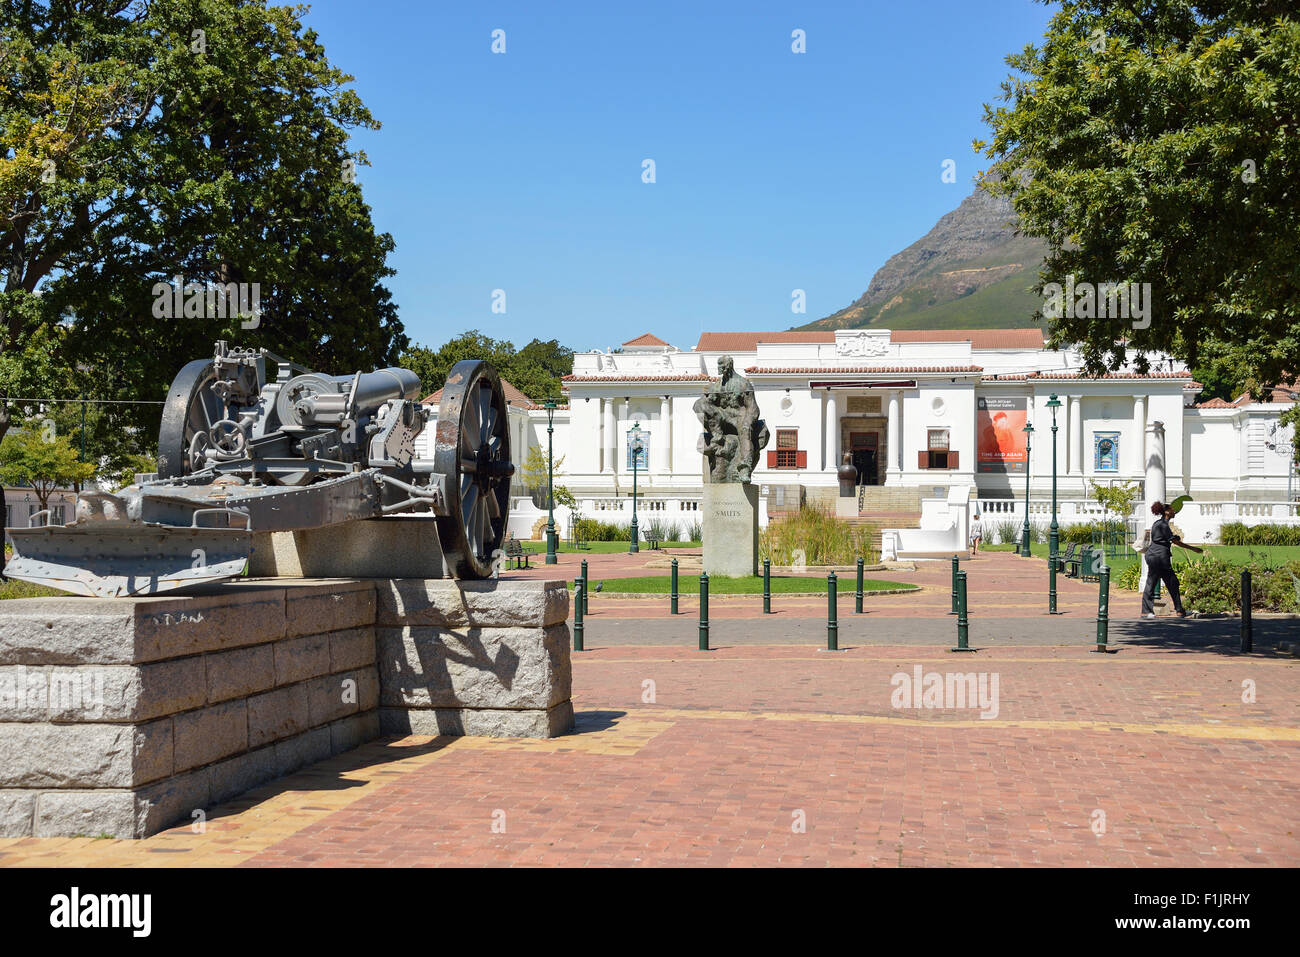 South African National Gallery, jardín de la compañía, Ciudad del Cabo, en la provincia de Western Cape, Sudáfrica Foto de stock